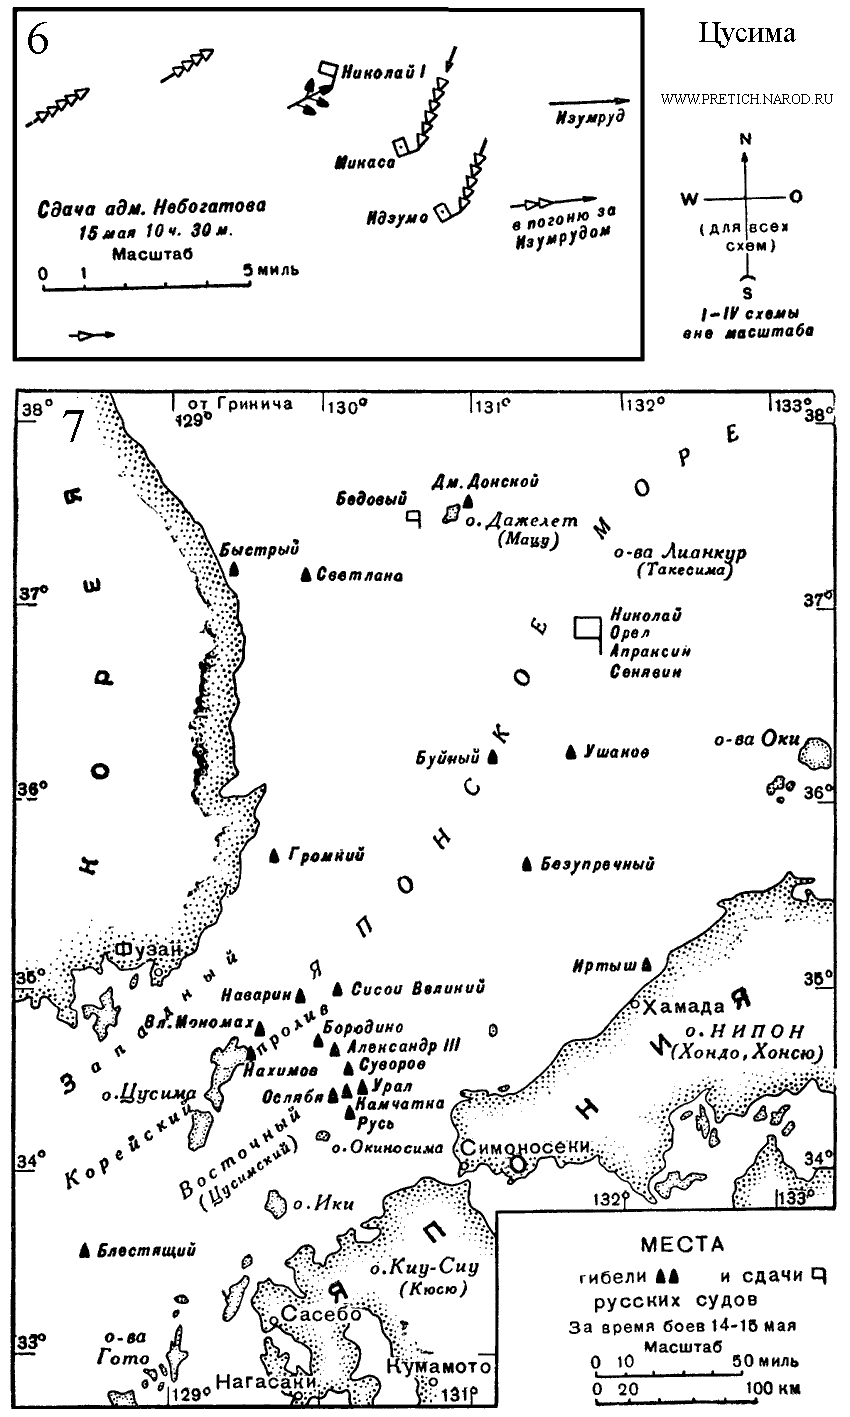 Цусимское сражение, 1905 г. Карты 6, 7. Русско-японская война